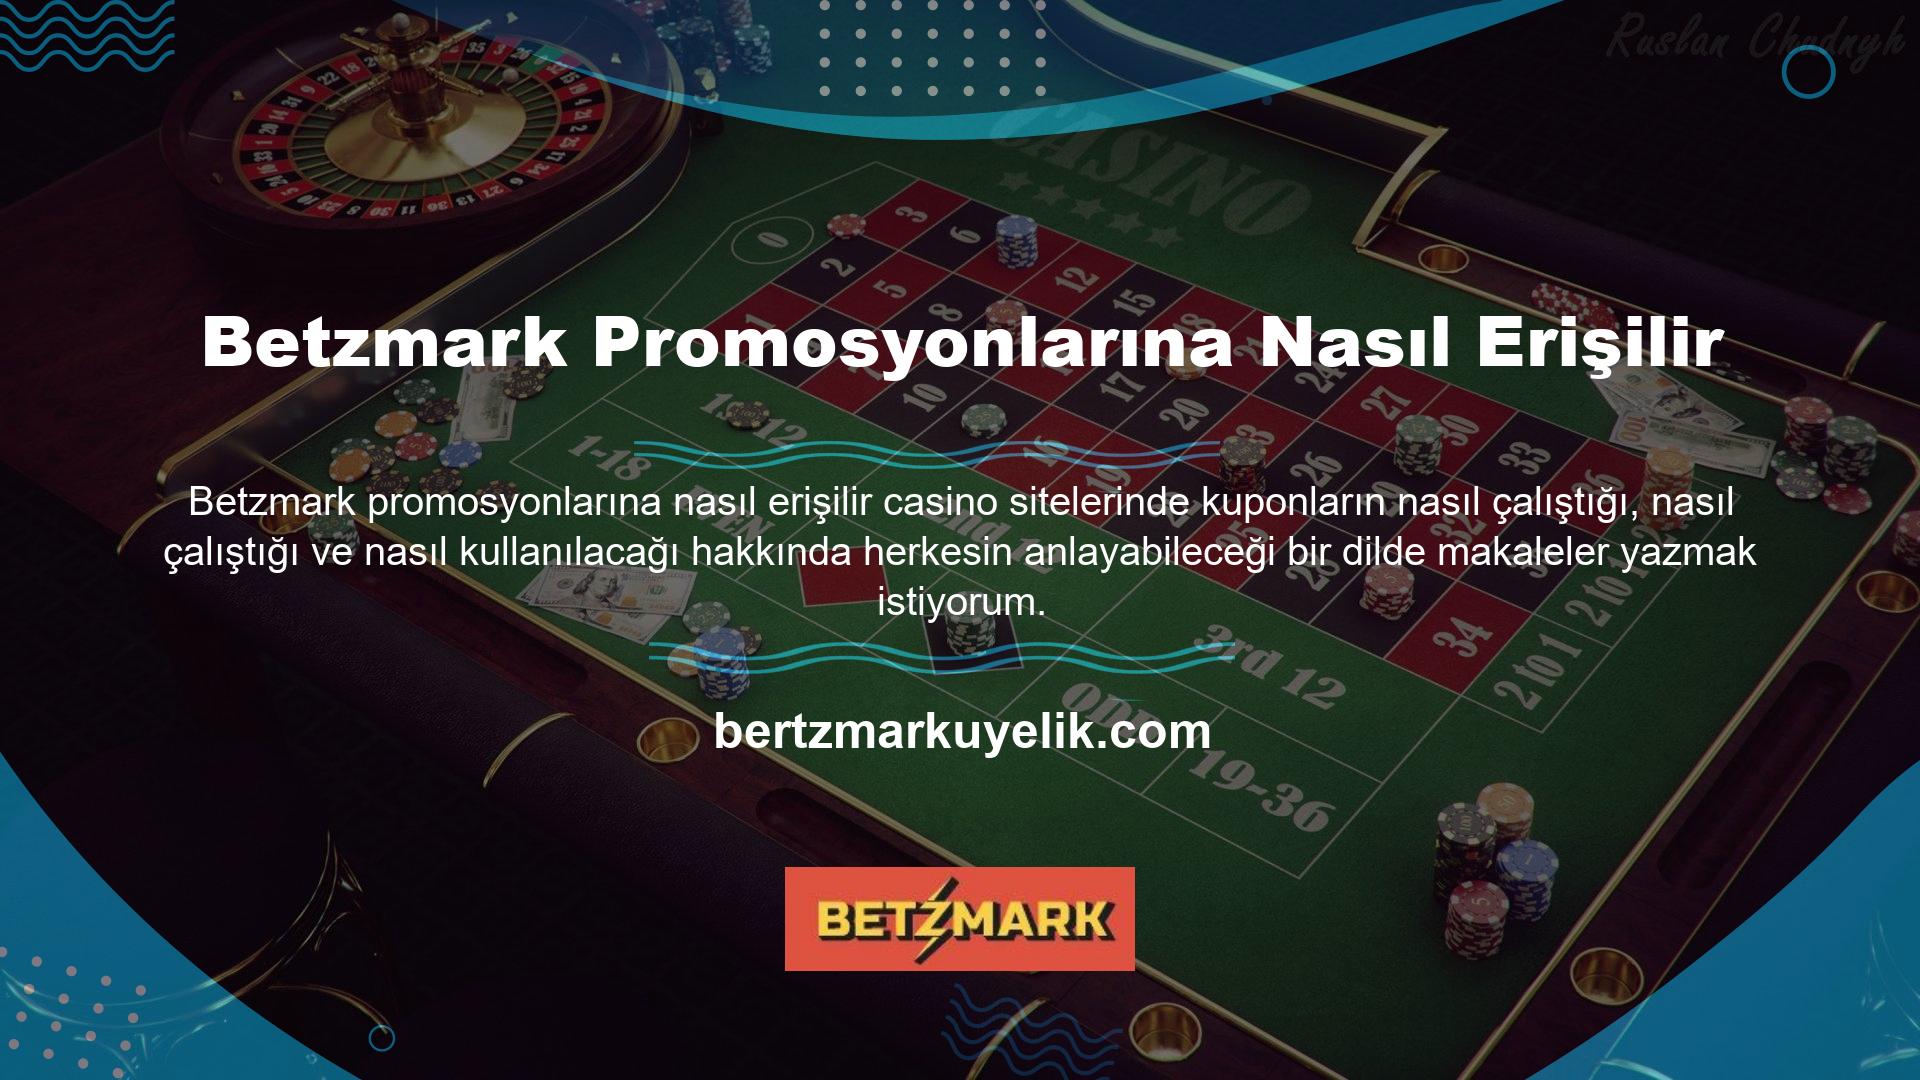 Casino kuponları, Betzmark çevrimiçi kuponları, casino yatağı stratejisine benzer 7/24 hizmet konsepti, zengin bonus teklifleri Betzmark canlı bahis türü Betzmark canlı bahis türü canlı bahisleri cezbetmektedir